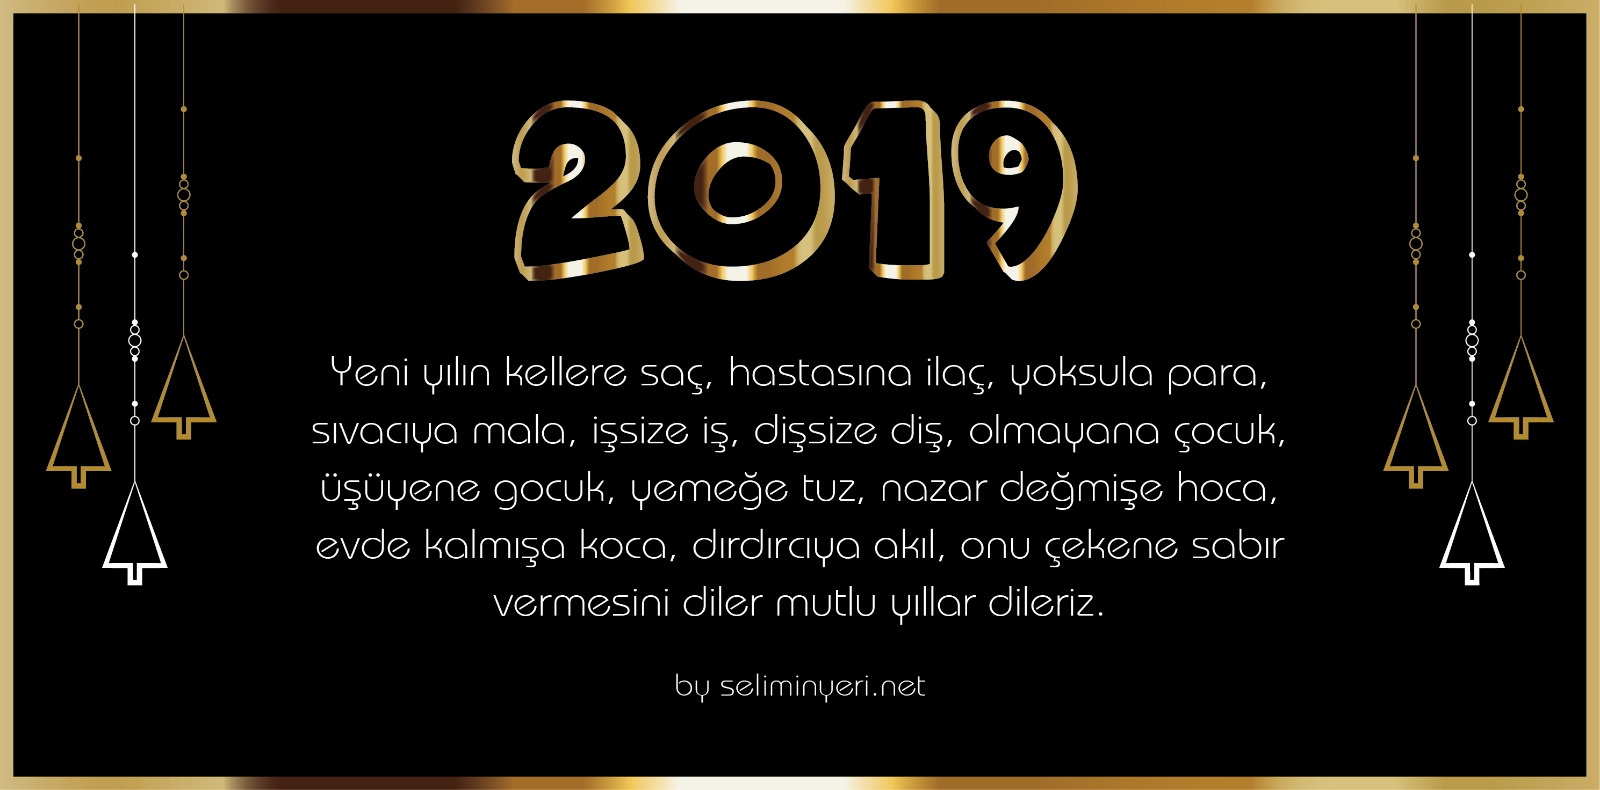 2019 yeni yılınız kutlu olsun.